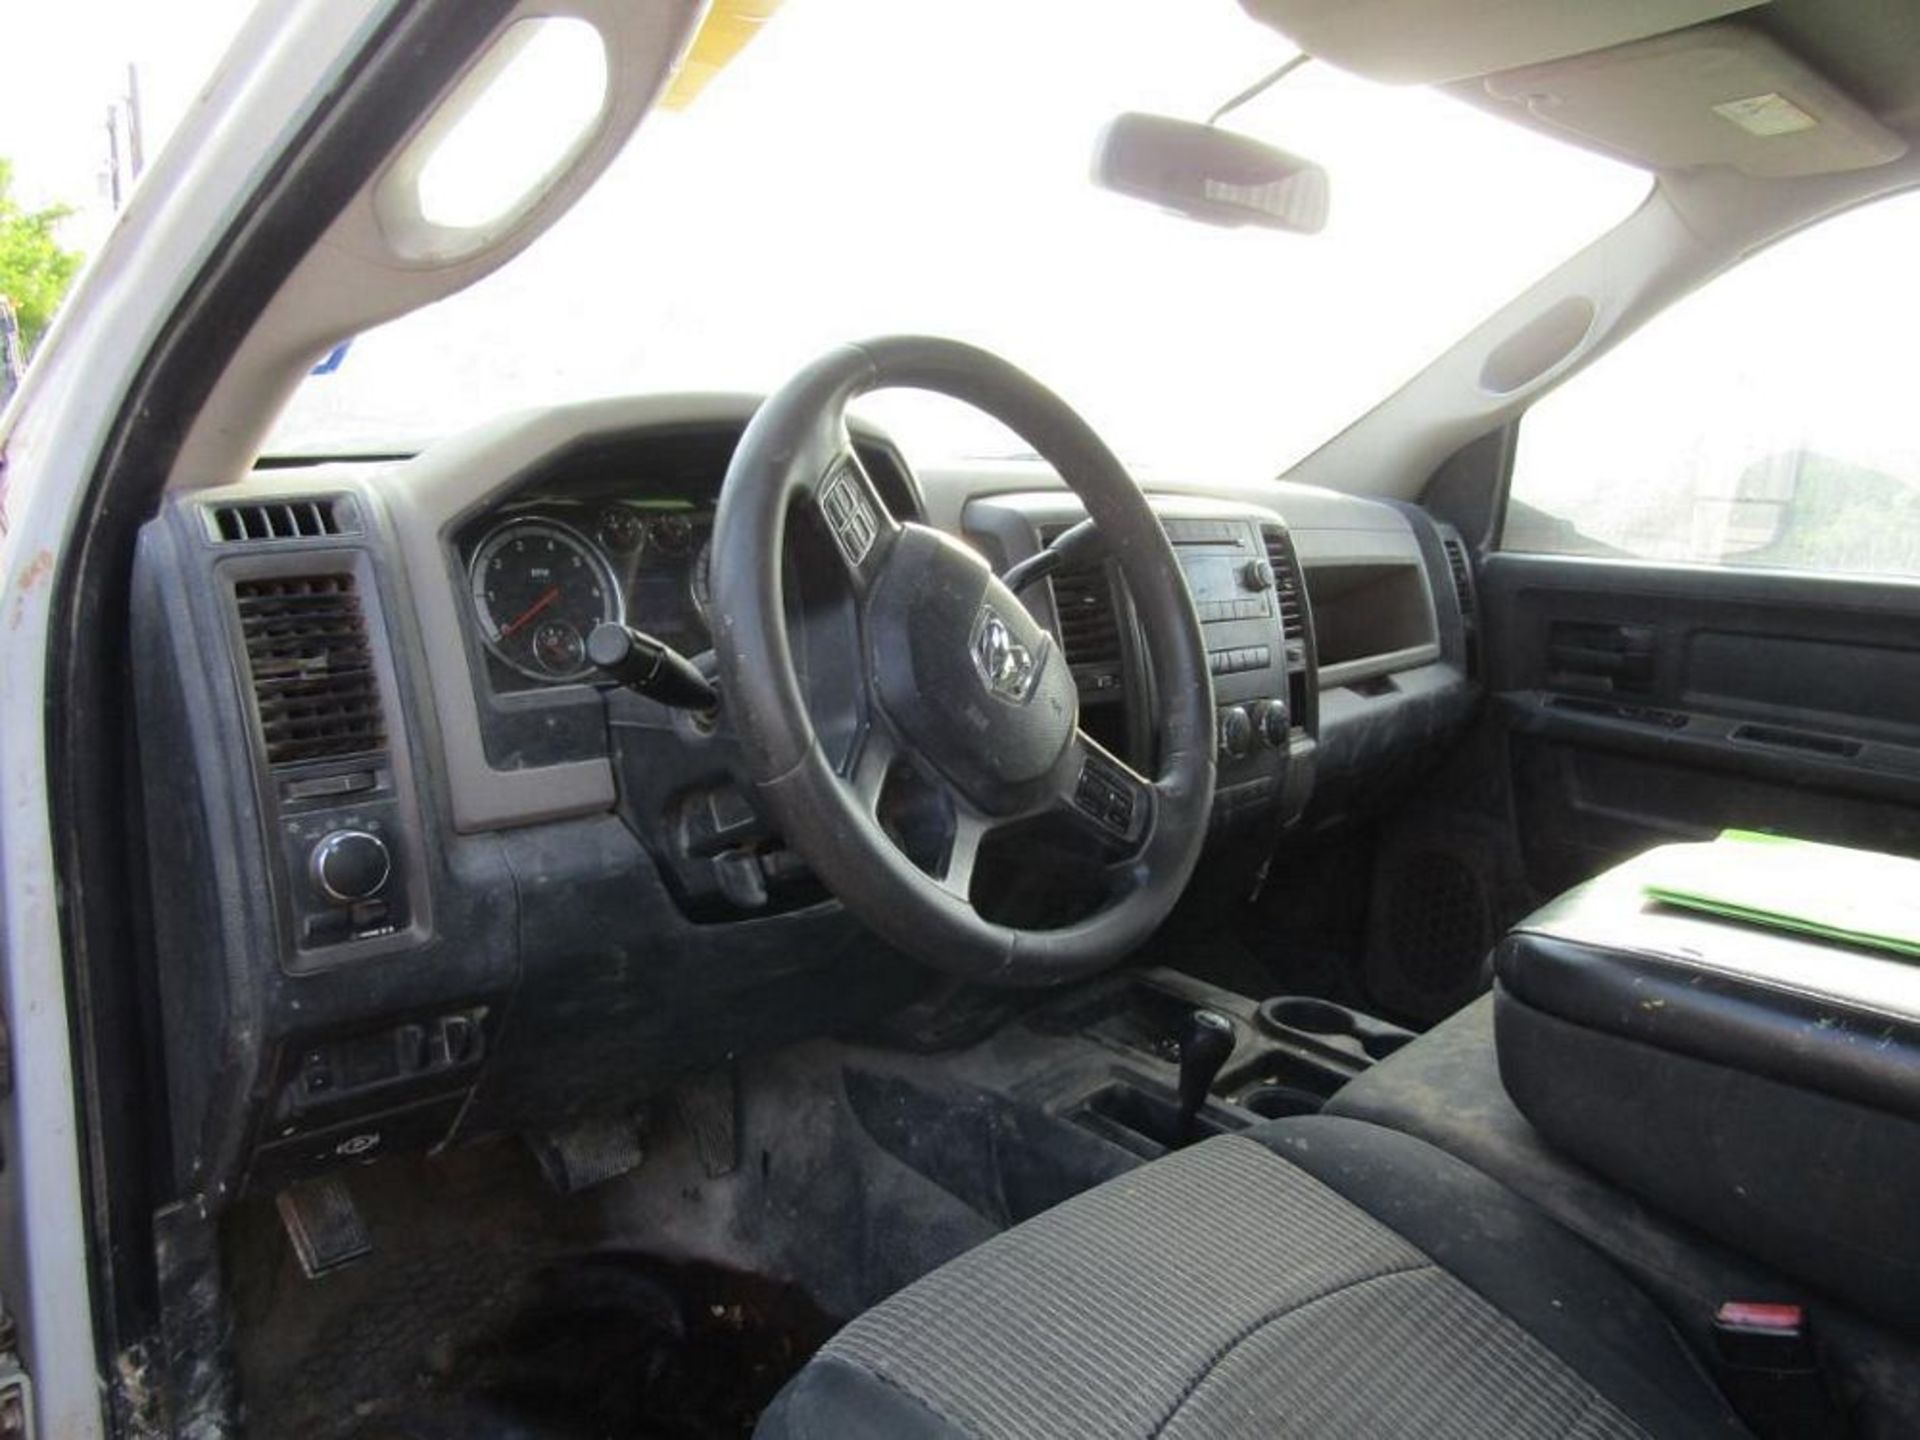 2012 Dodge Ram 3500 HD, Hemi 5.7 L, Crew Cab 4X4 Work Truck, 135 PSI Air Compressor, Generac GP5500 - Image 9 of 10